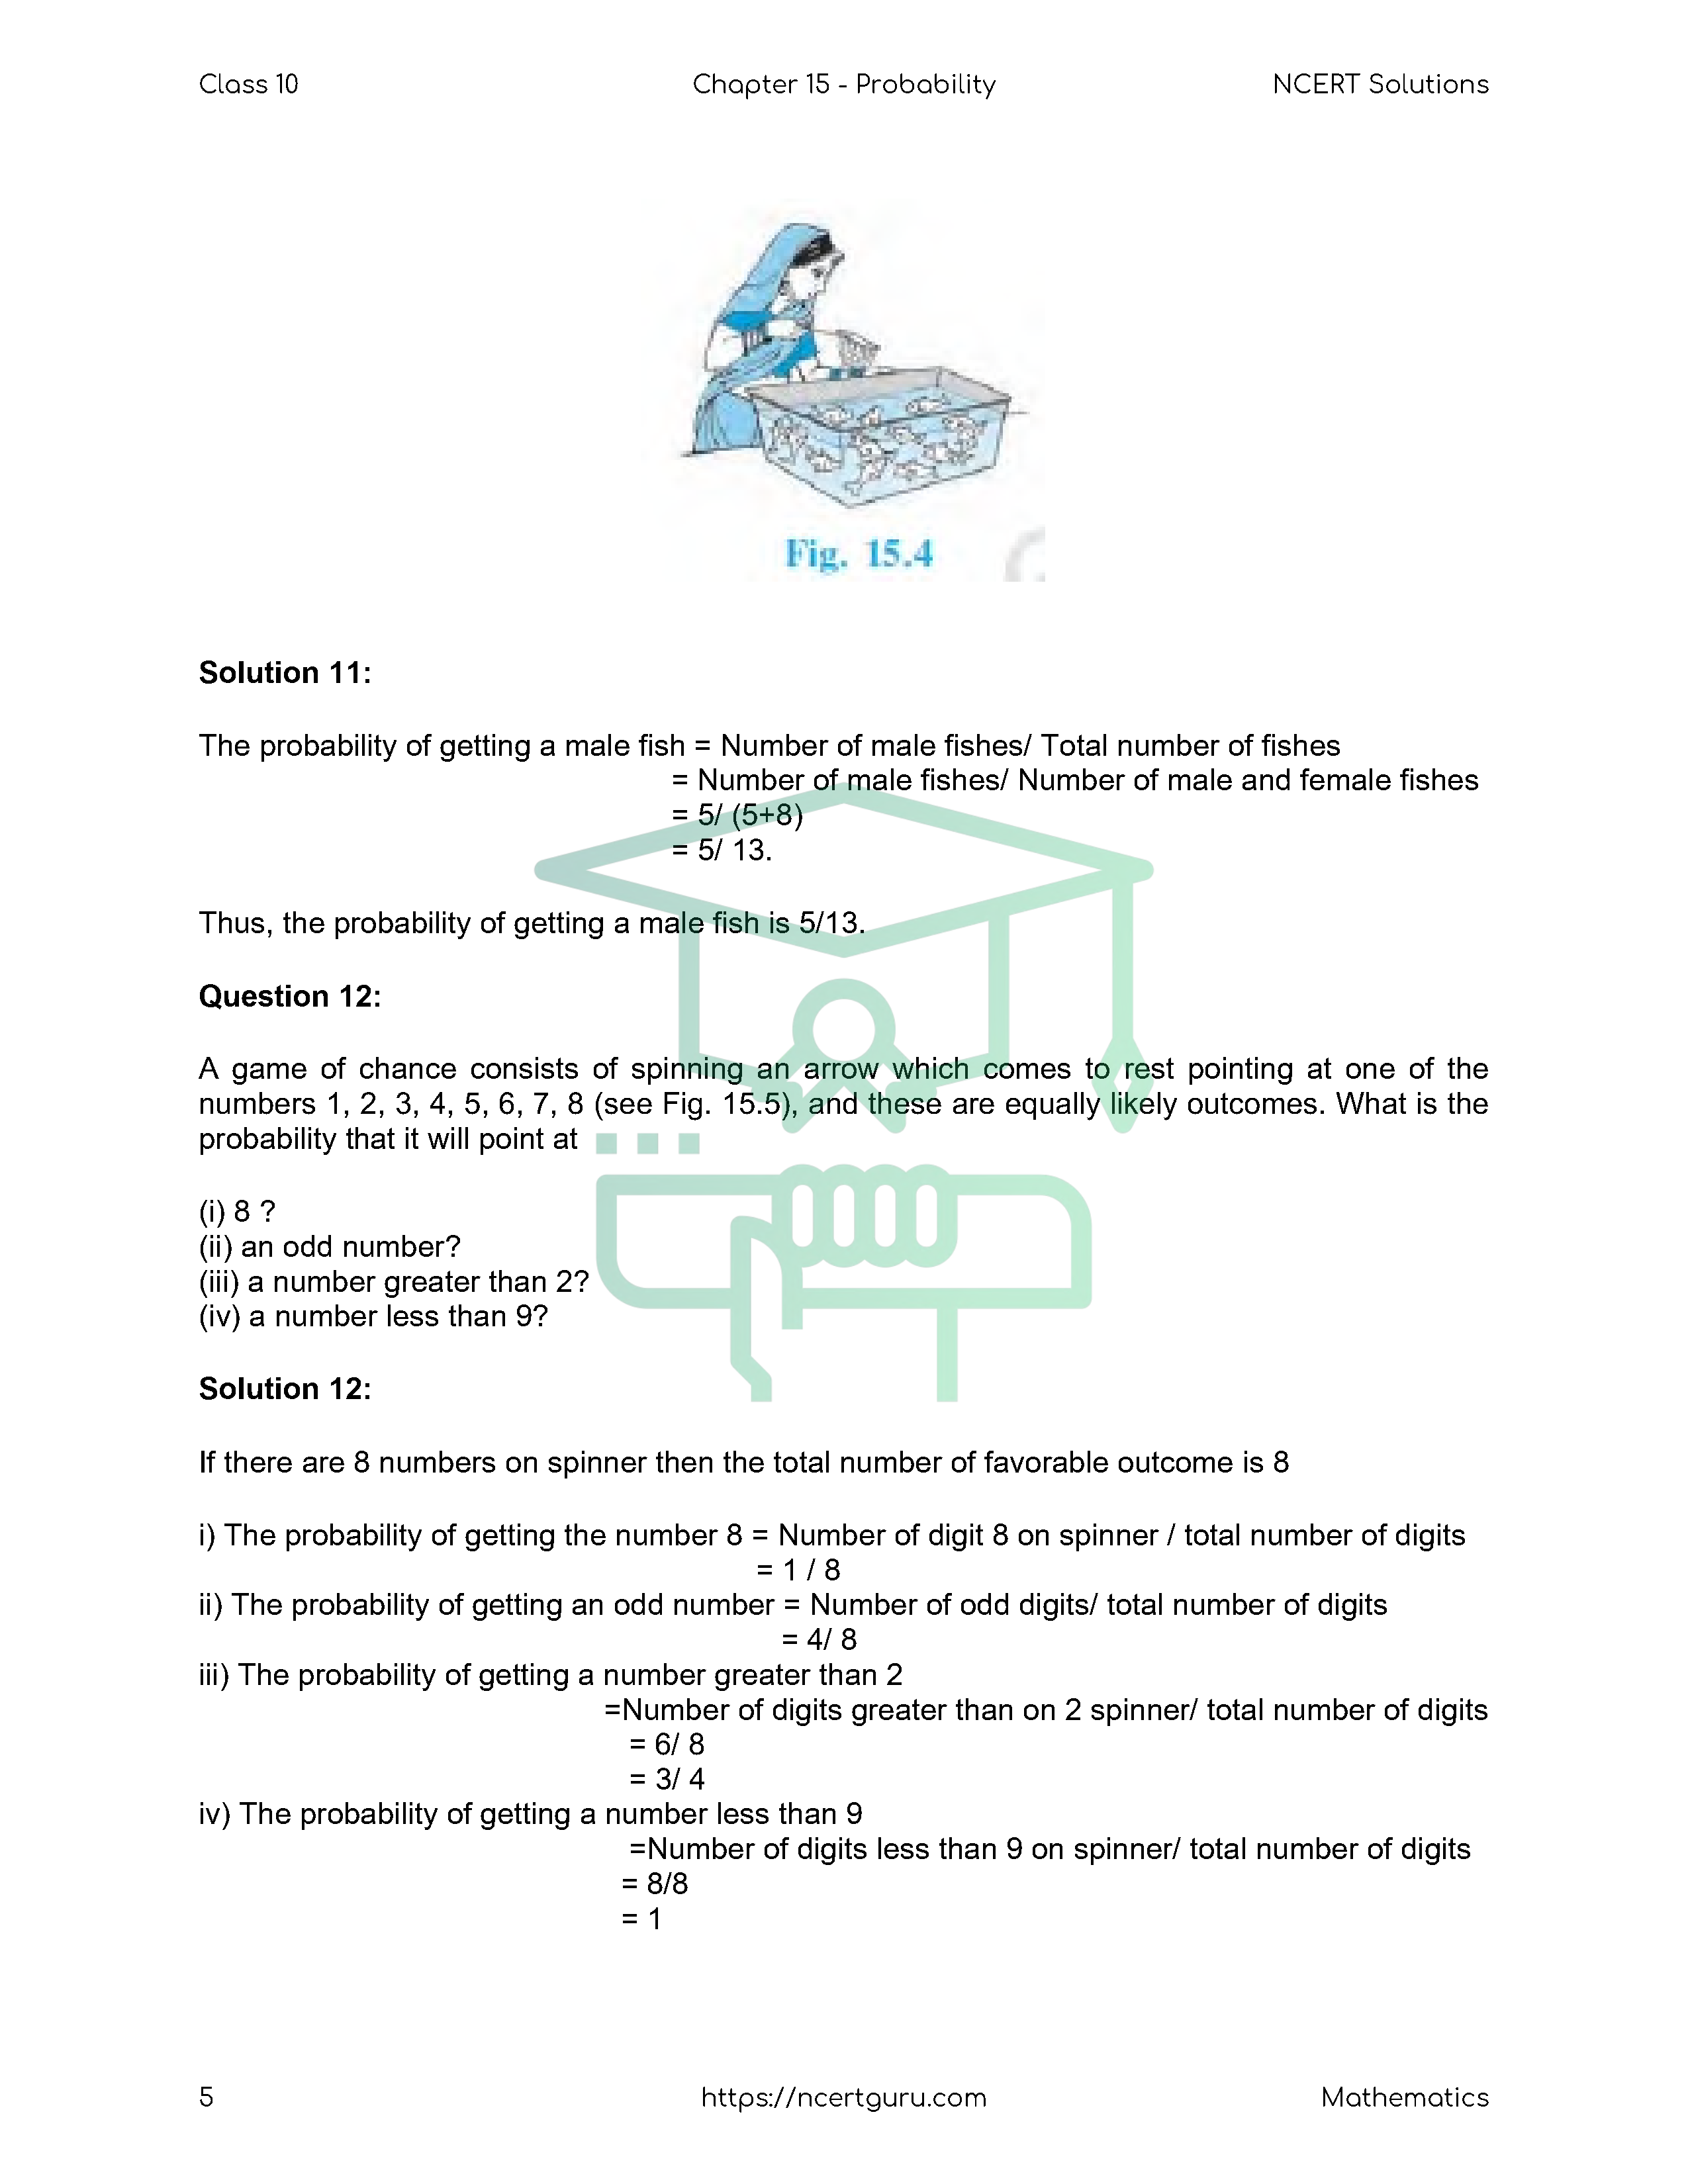 NCERT Solutions for Class 10 Maths Chapter 15